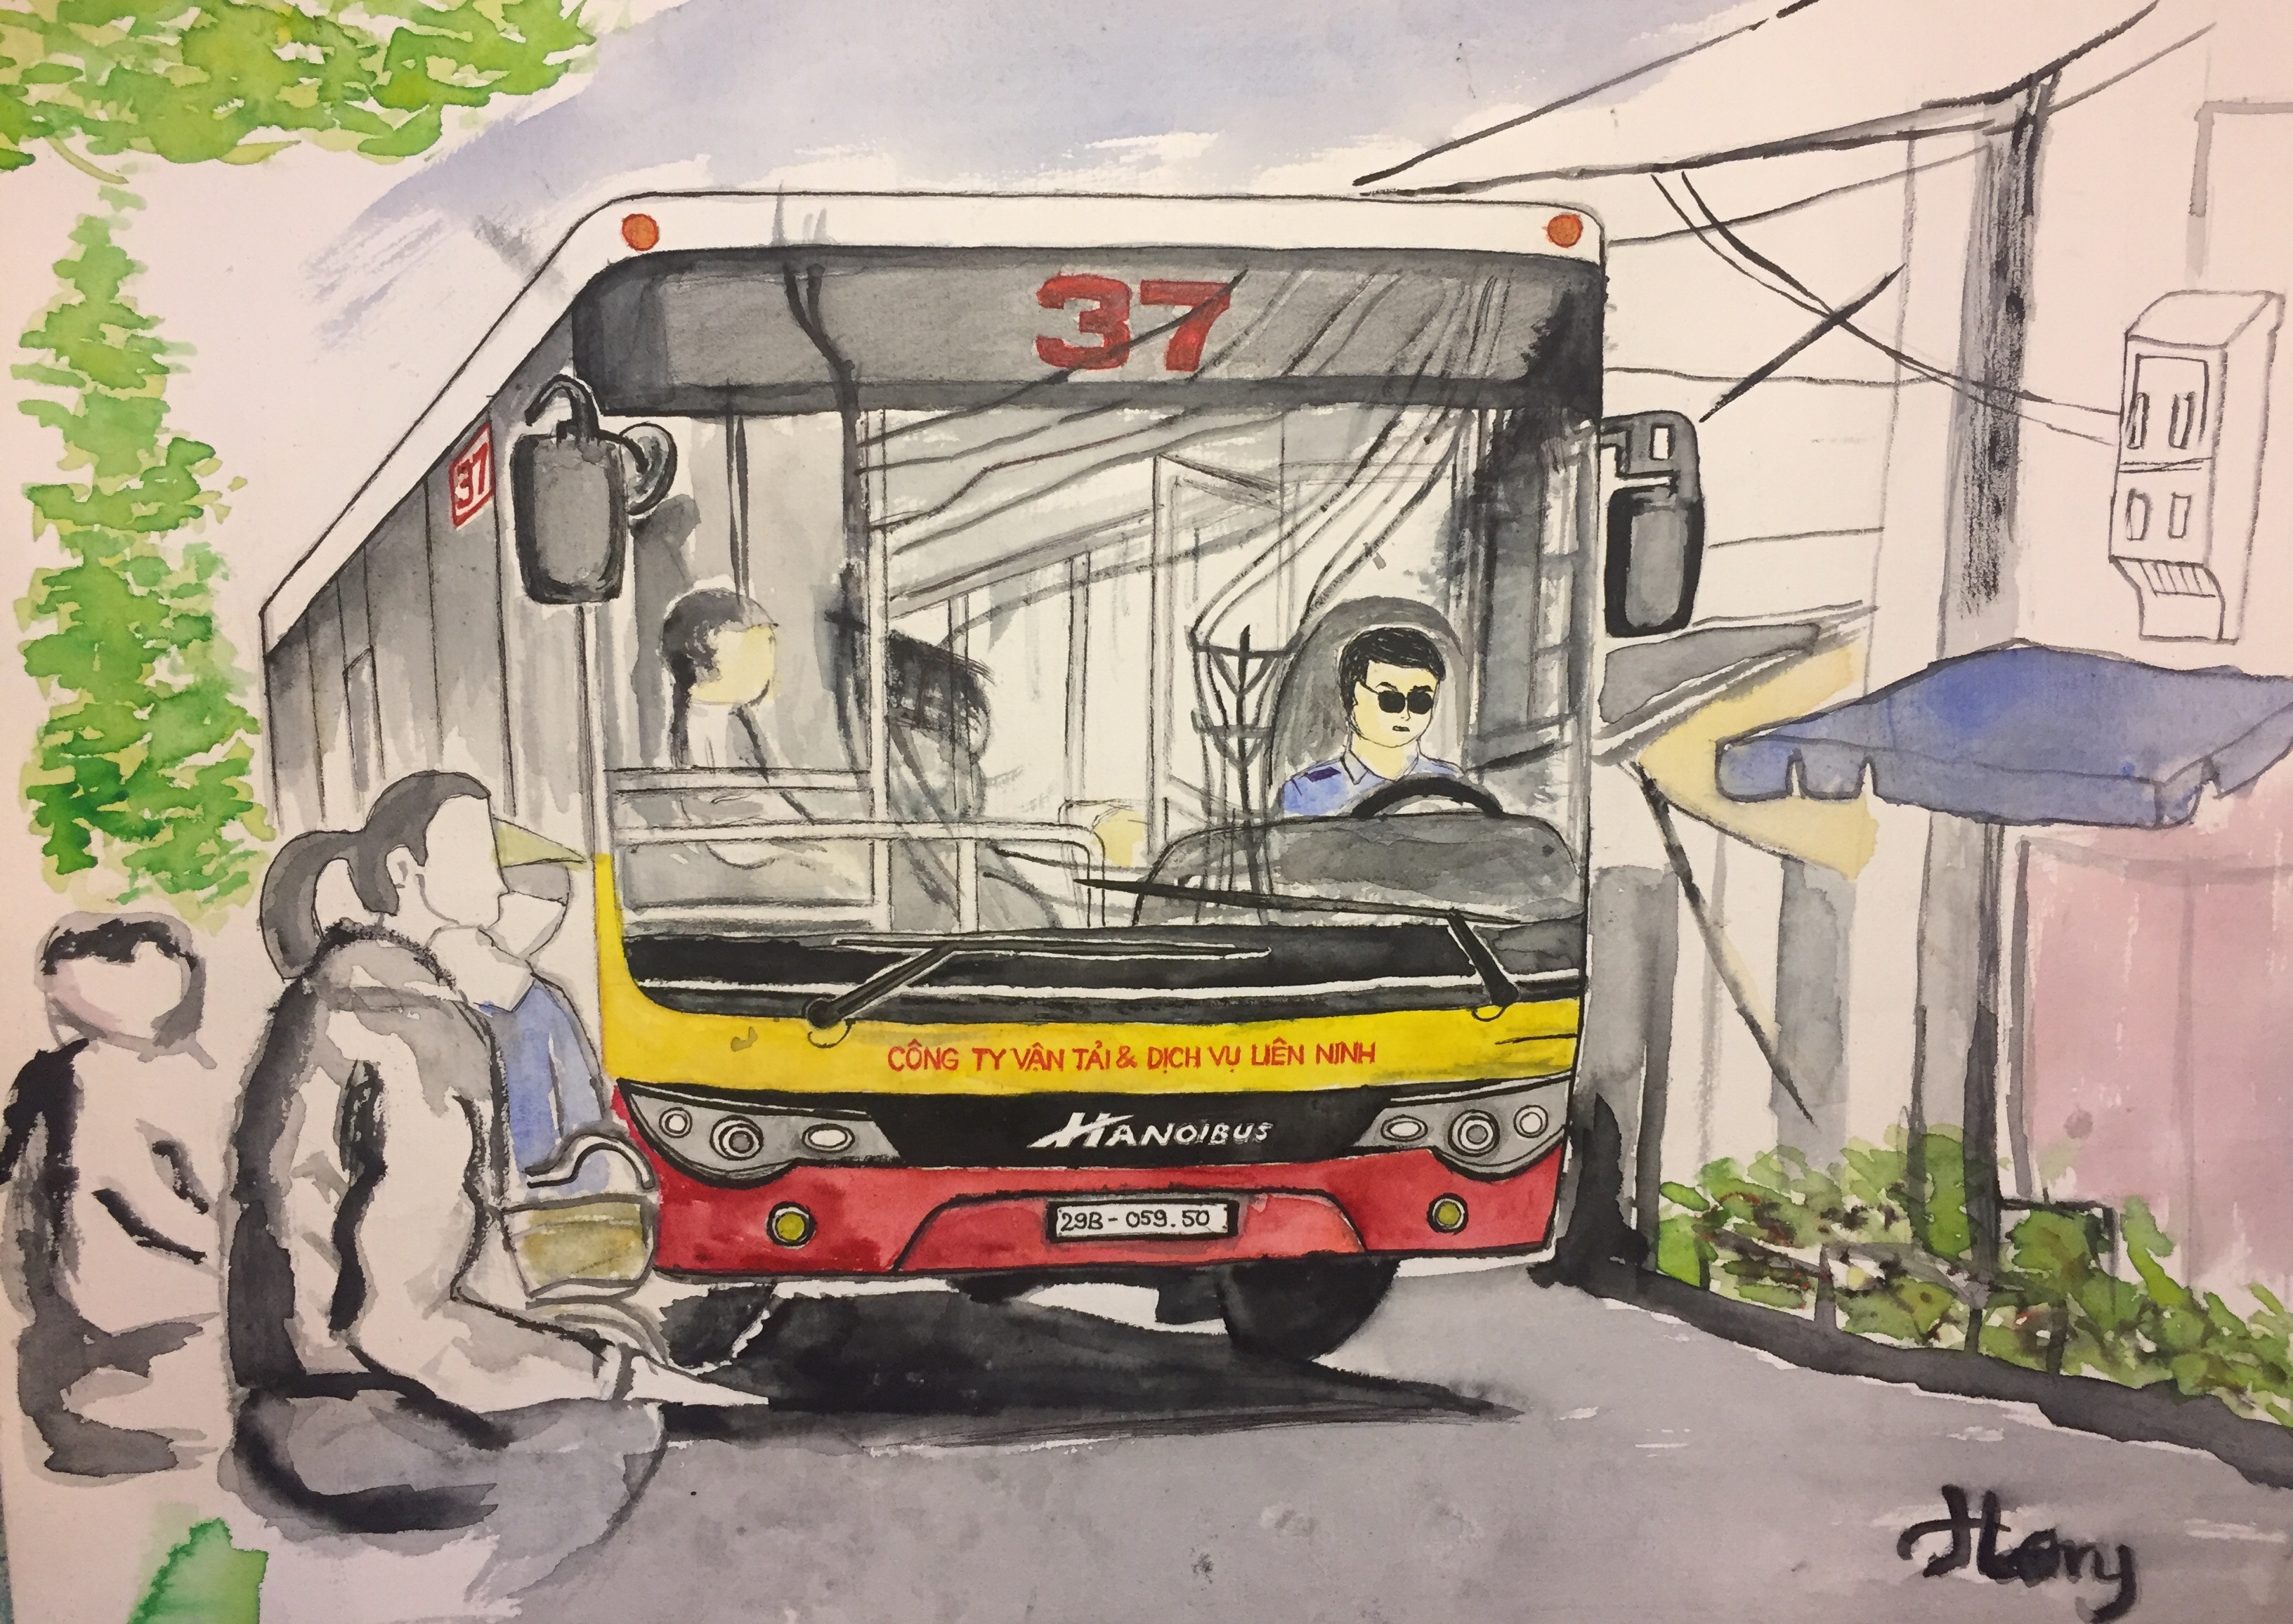 Hình ảnh xe buýt Hà Nội đậm nét địa phương sẽ khiến bạn cảm thấy yêu thích và gần gũi hơn với thành phố nghìn năm văn hiến. Hãy cùng chiêm ngưỡng và khám phá đường phố Hà Nội qua bức ảnh này.